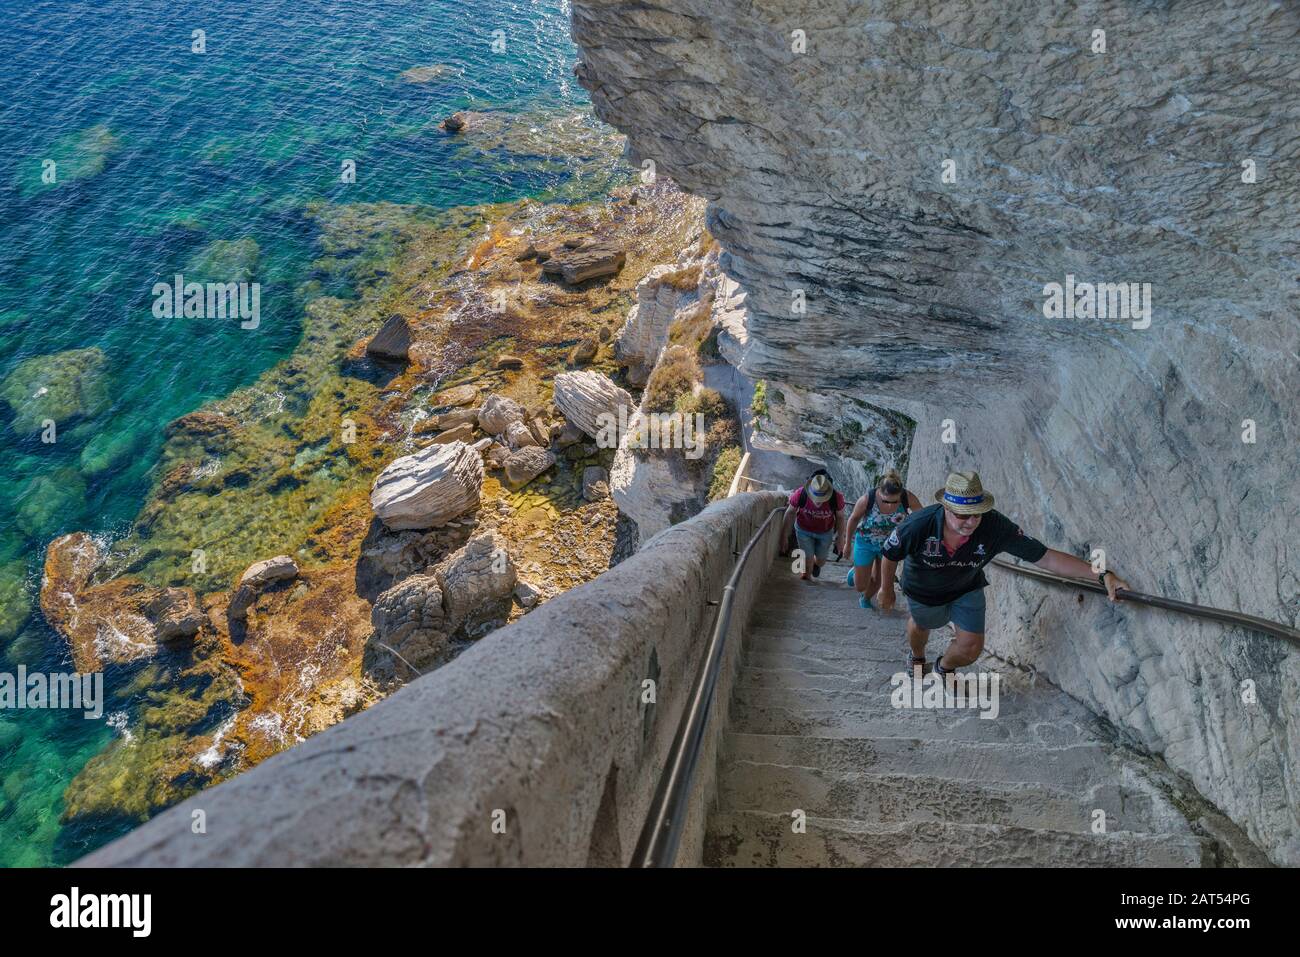 Visitors ascending the stairs at Escalier du roi d'Aragon in limestone cliff over Strait of Bonifacio in Bonifacio, Corse-du-Sud, Corsica, France Stock Photo